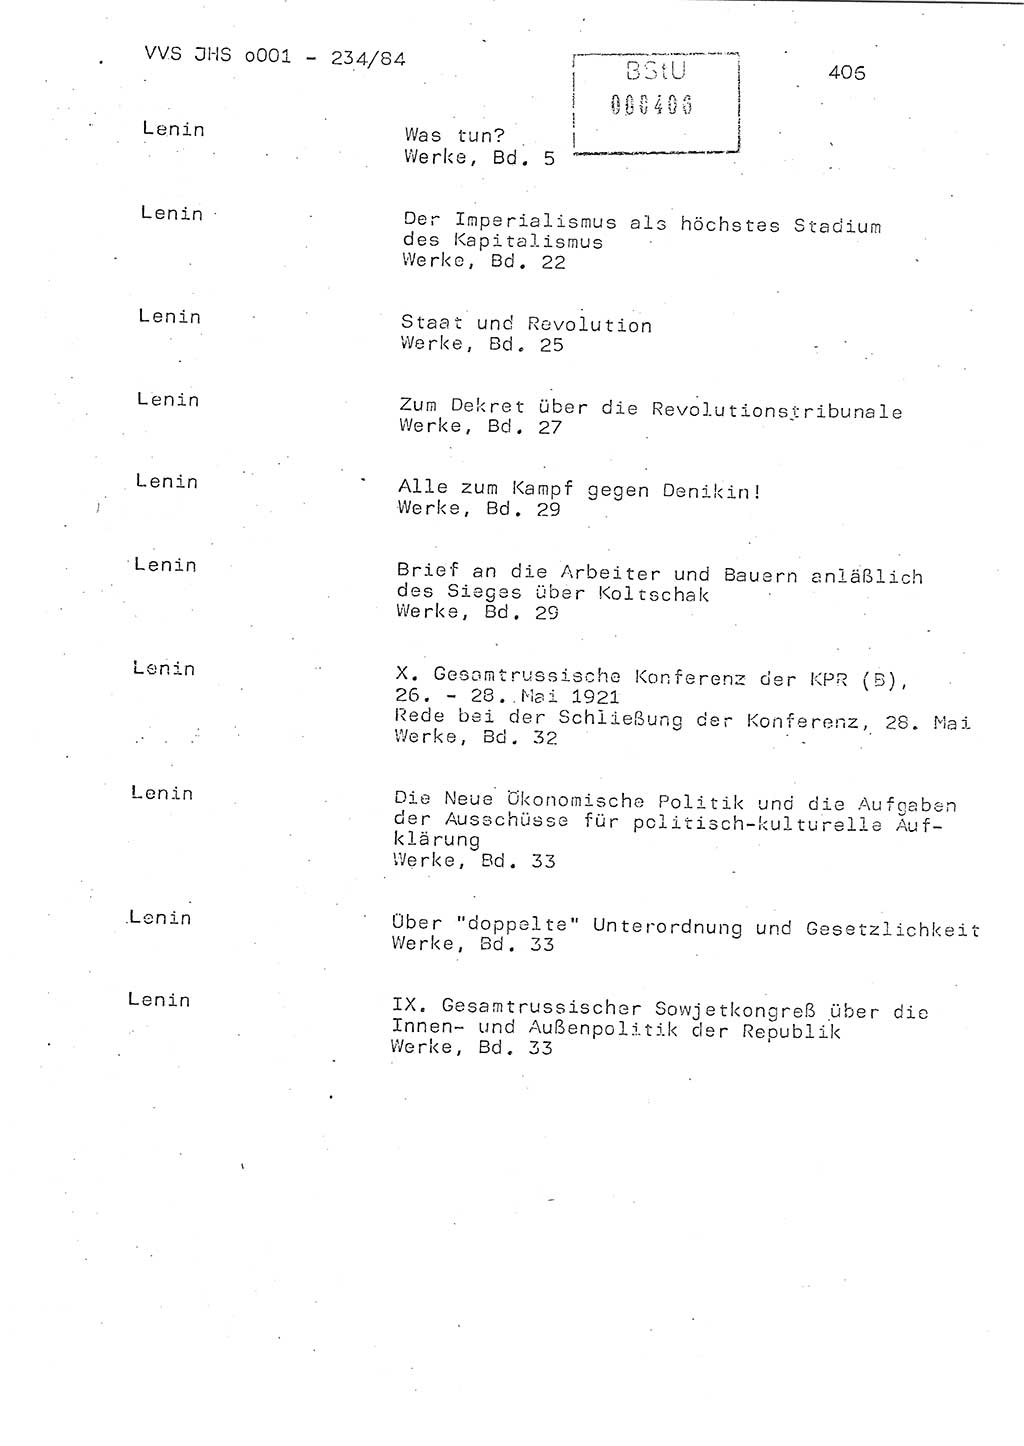 Dissertation Oberst Siegfried Rataizick (Abt. ⅩⅣ), Oberstleutnant Volkmar Heinz (Abt. ⅩⅣ), Oberstleutnant Werner Stein (HA Ⅸ), Hauptmann Heinz Conrad (JHS), Ministerium für Staatssicherheit (MfS) [Deutsche Demokratische Republik (DDR)], Juristische Hochschule (JHS), Vertrauliche Verschlußsache (VVS) o001-234/84, Potsdam 1984, Seite 406 (Diss. MfS DDR JHS VVS o001-234/84 1984, S. 406)